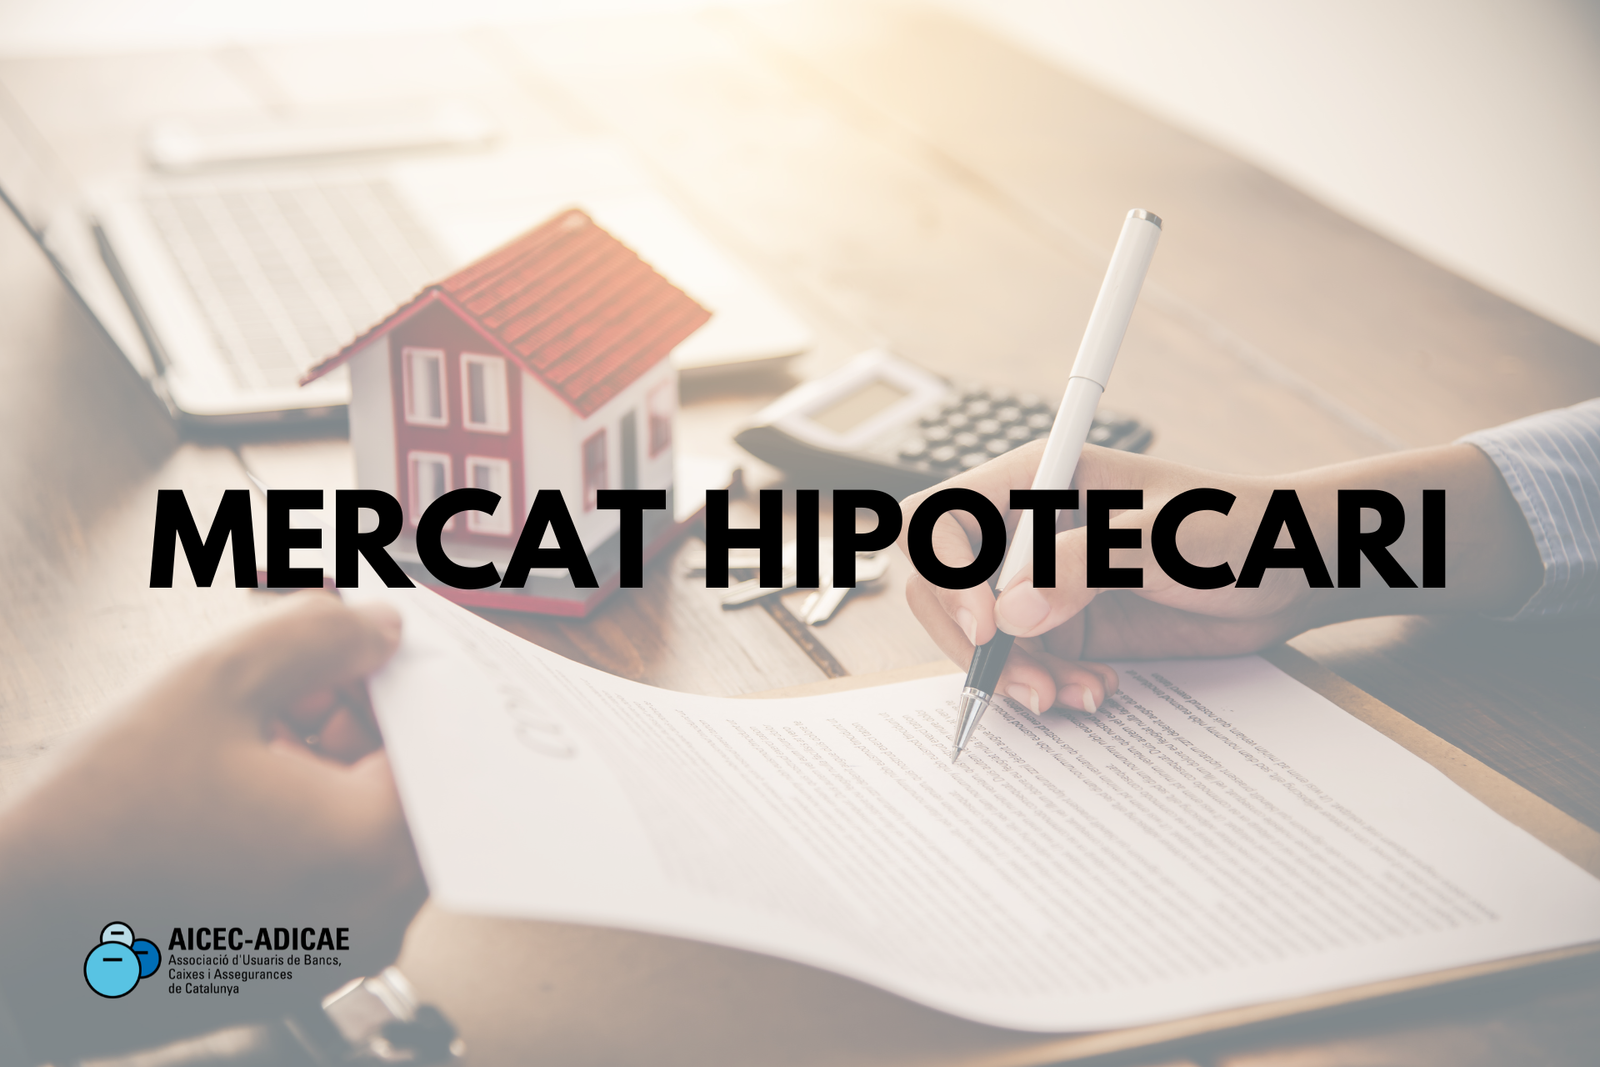 Mercat Hipotecari